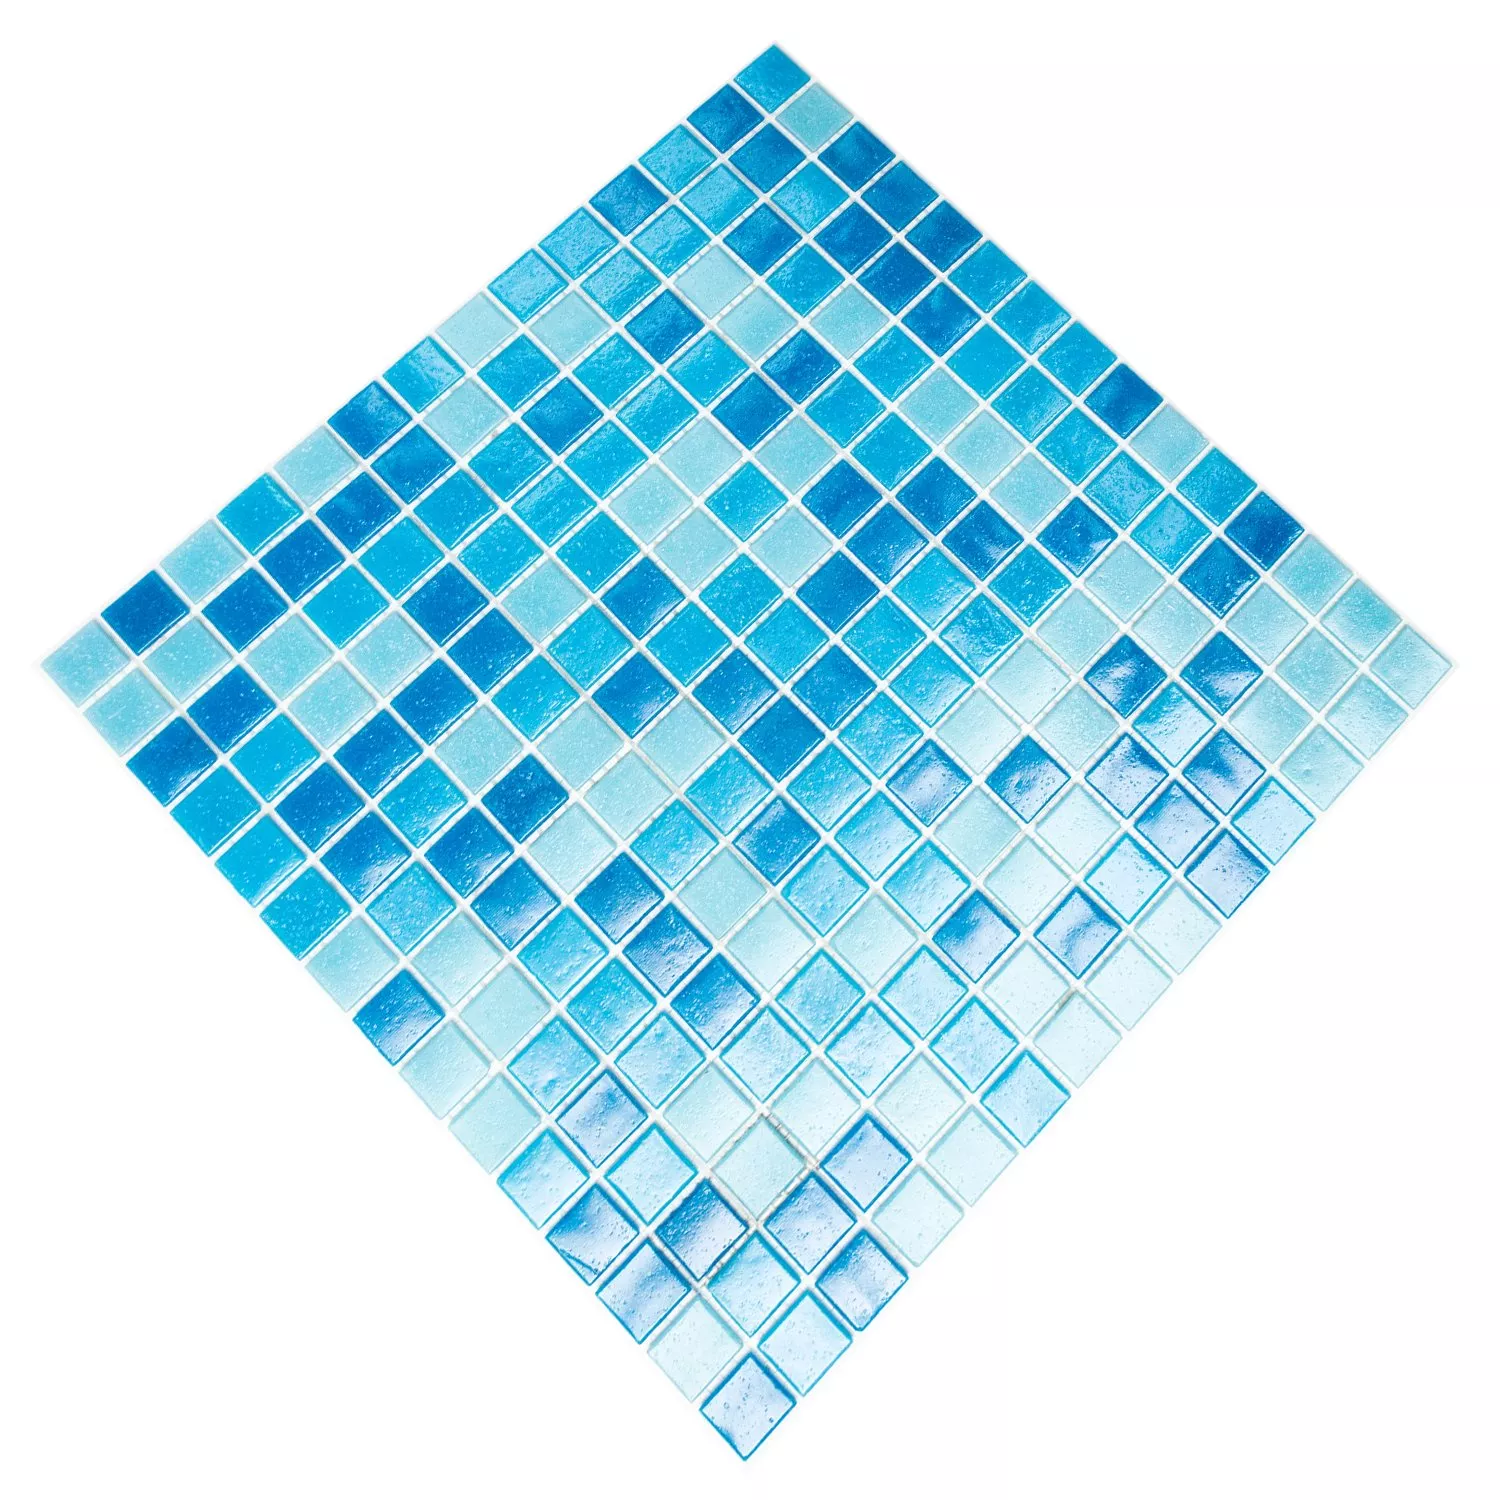 Sample Glasmozaïek Tegels Blauw Mix